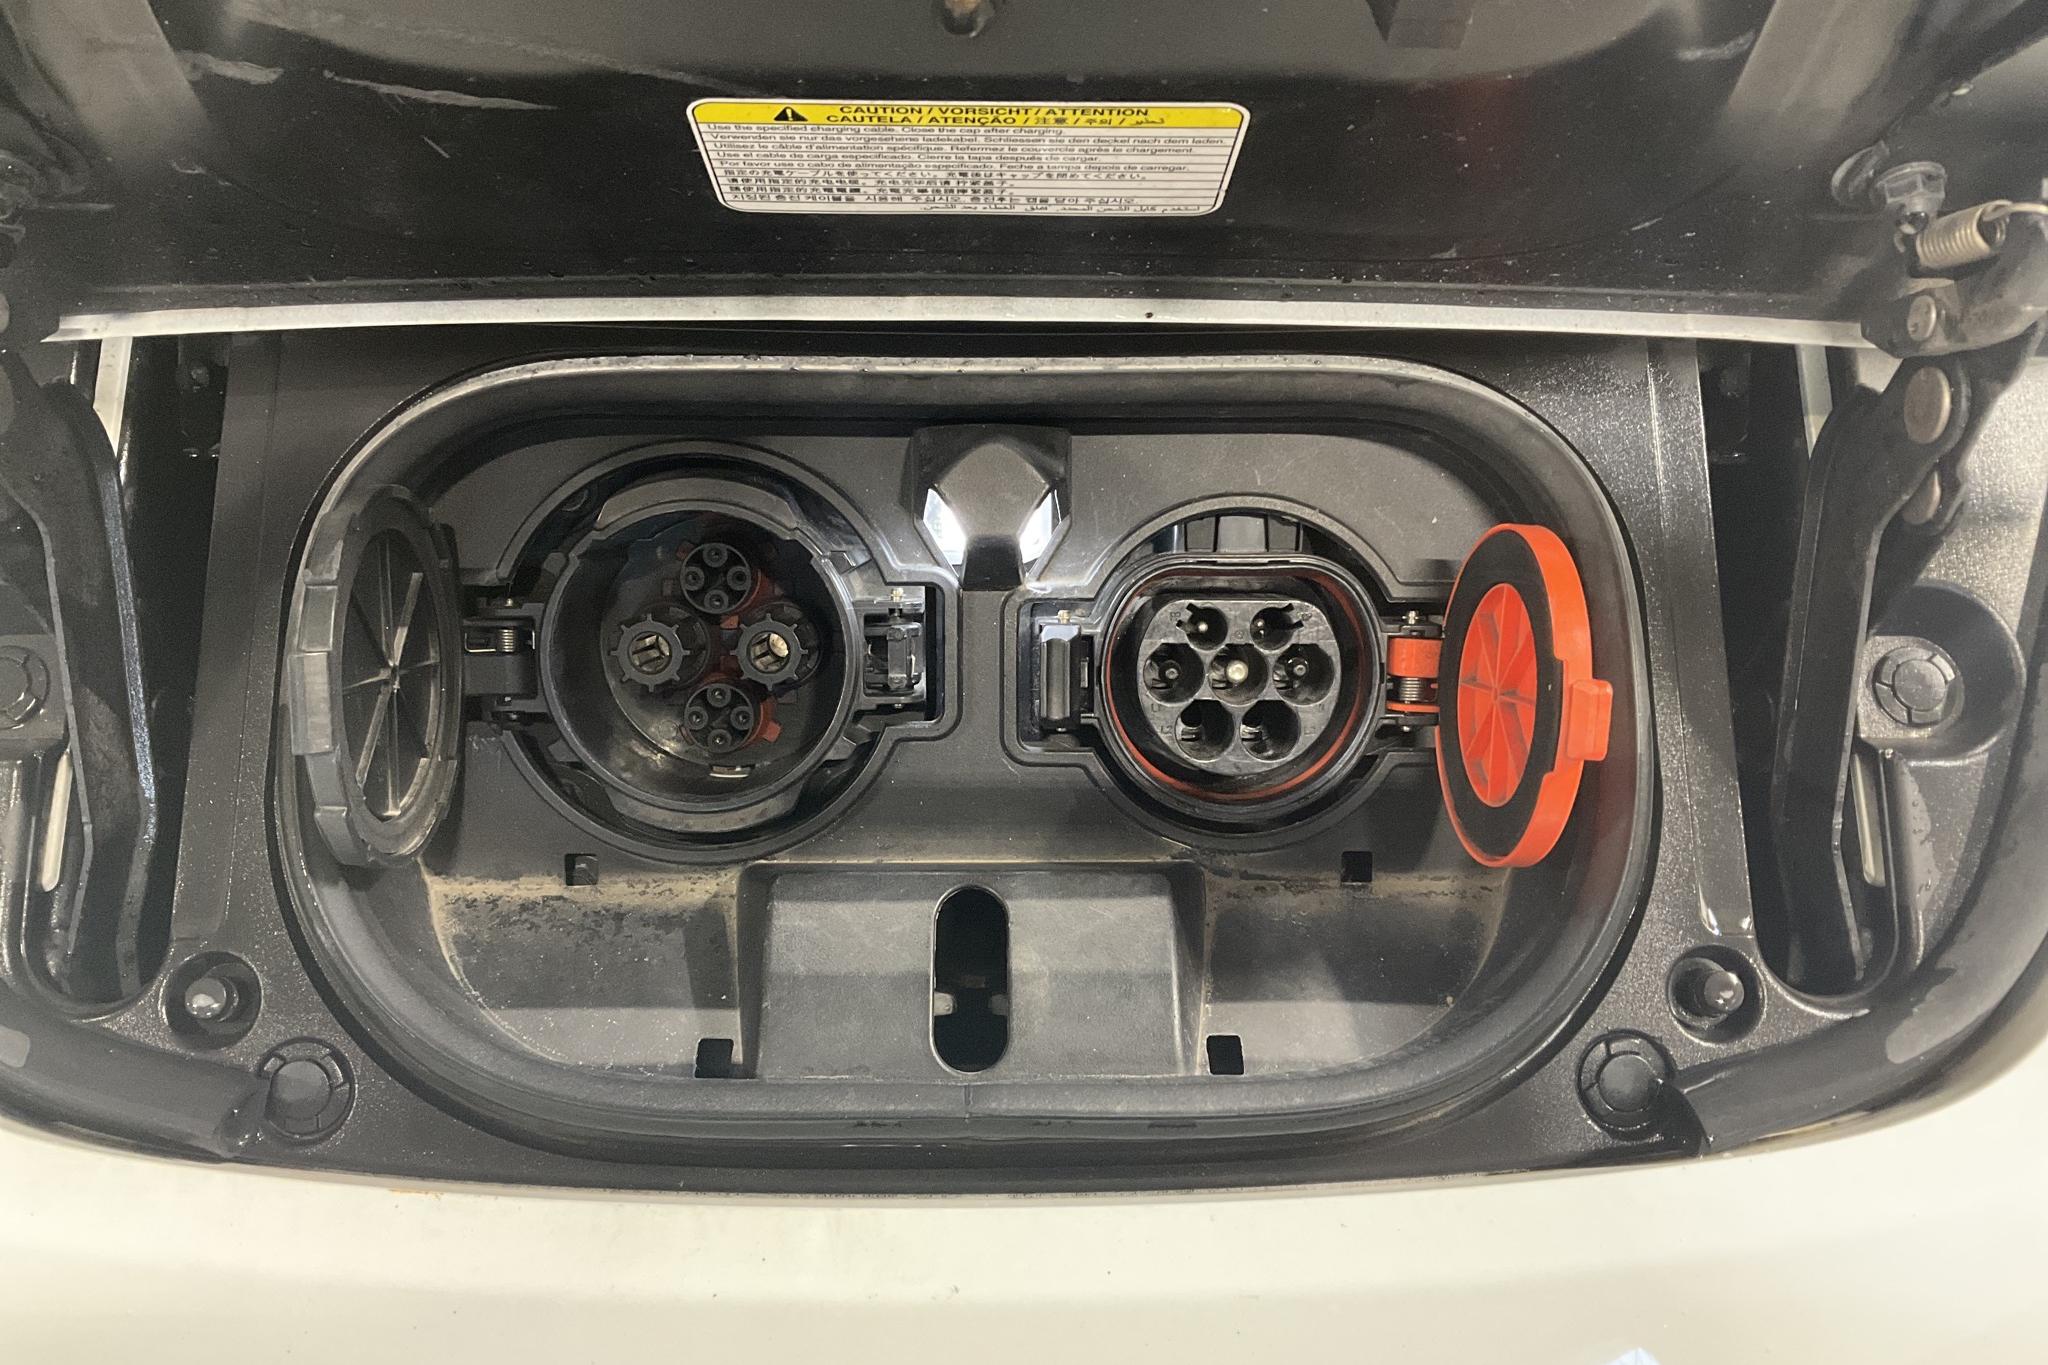 Nissan LEAF 5dr 39 kWh (150hk) - 8 459 mil - Automat - vit - 2019